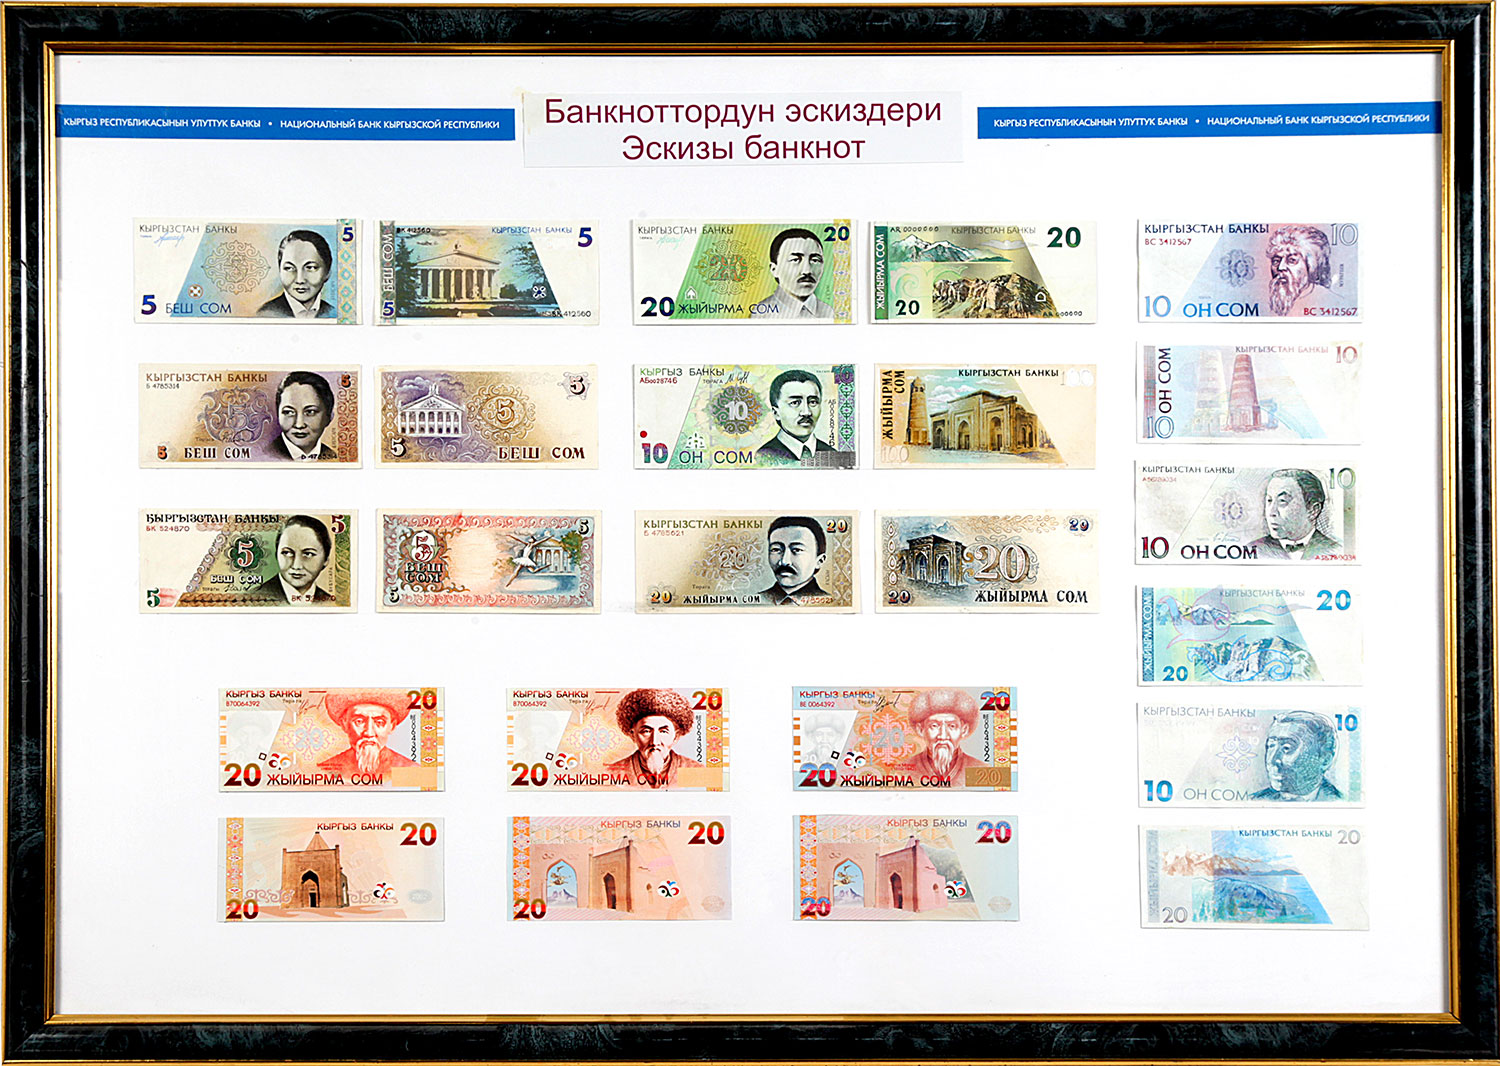 Национальная валюта пример. Эскизы банкнот. Эскизы валют. Национальная валюта примеры. Кыргызские сомы эскизы банкнот в музее.